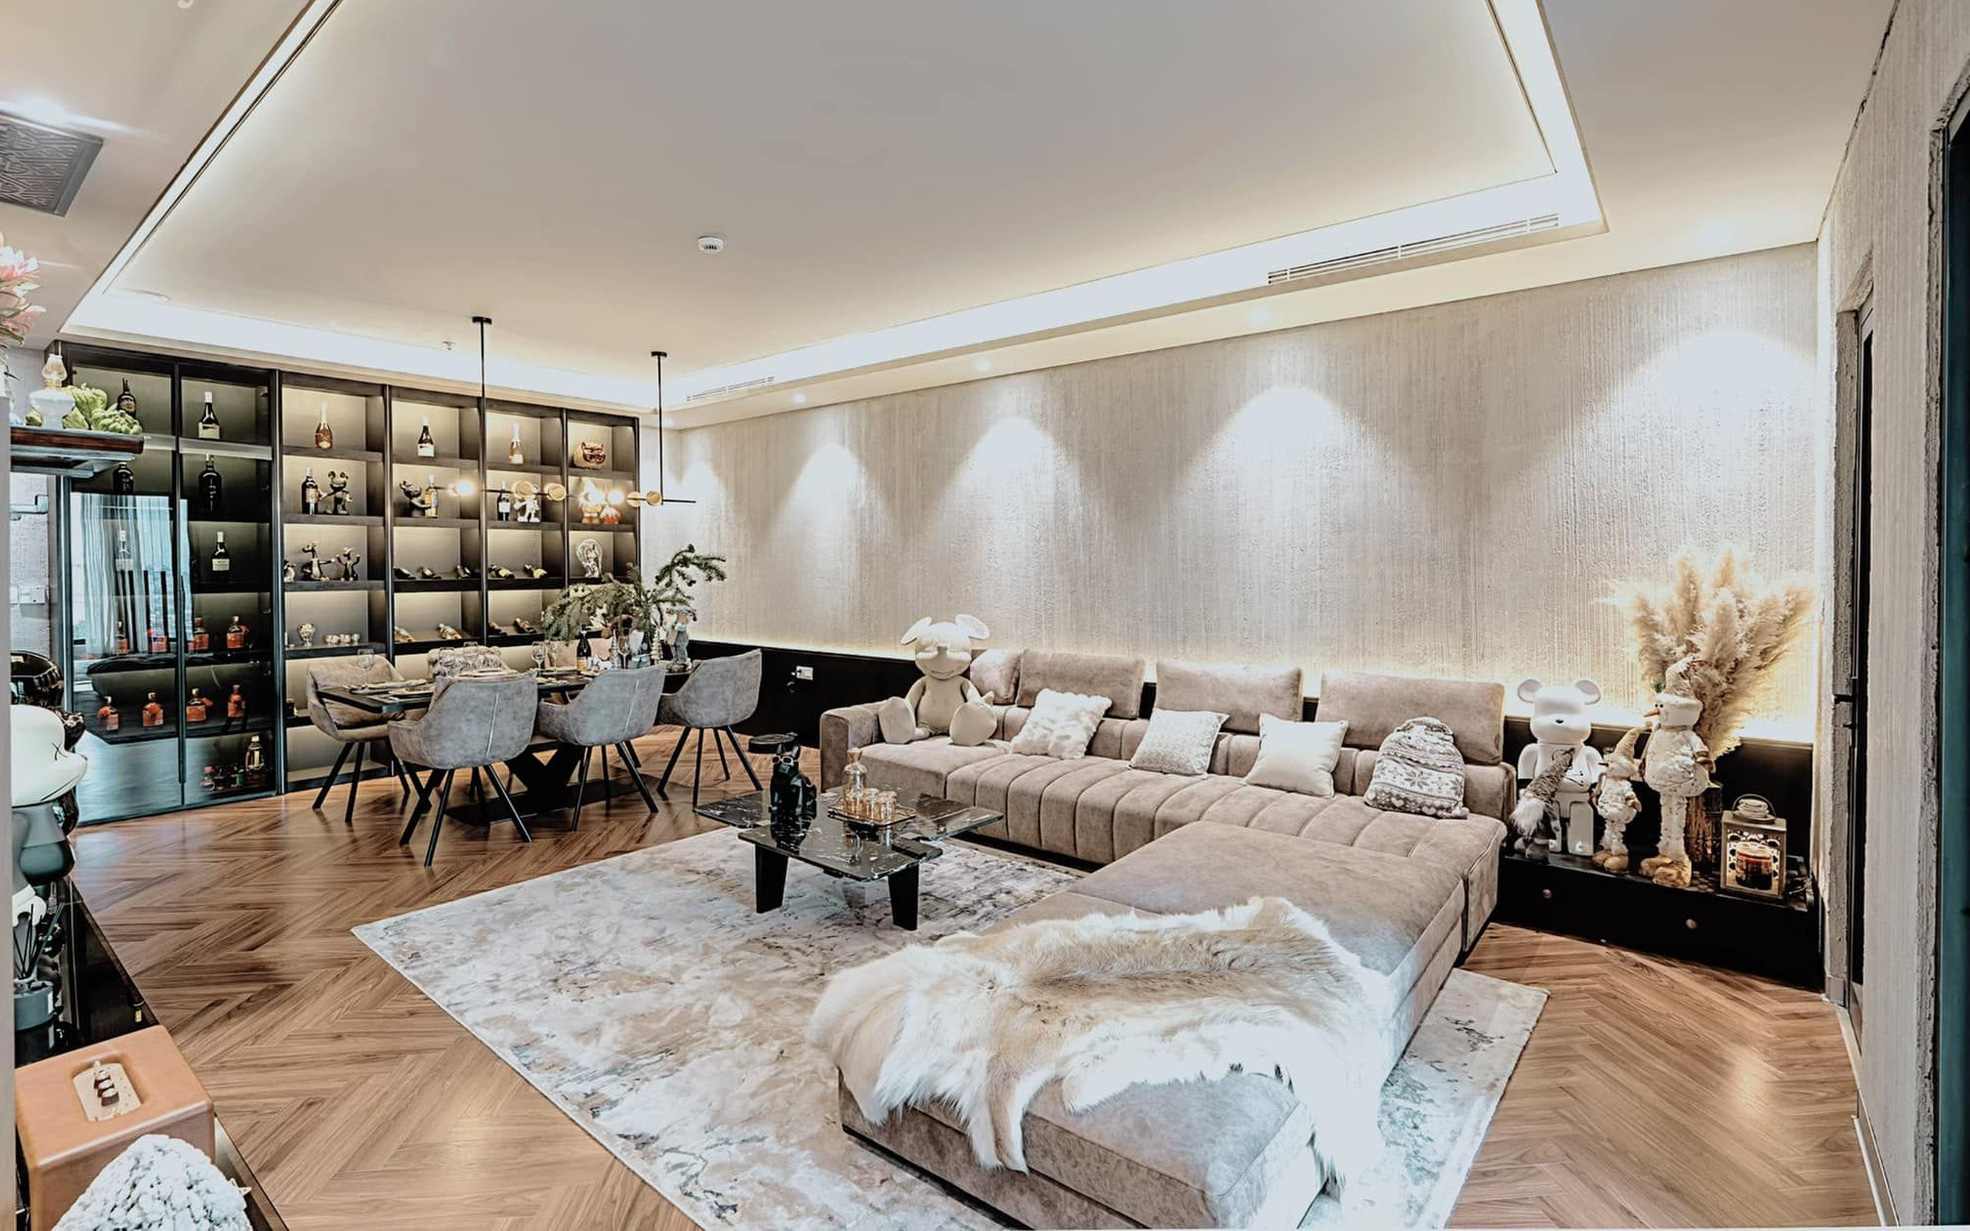 Ngắm "đã mắt" căn hộ 95m² theo tone màu trầm, đồ nội thất và phụ kiện được mạ vàng cực sang của 9x tại Hà Nội